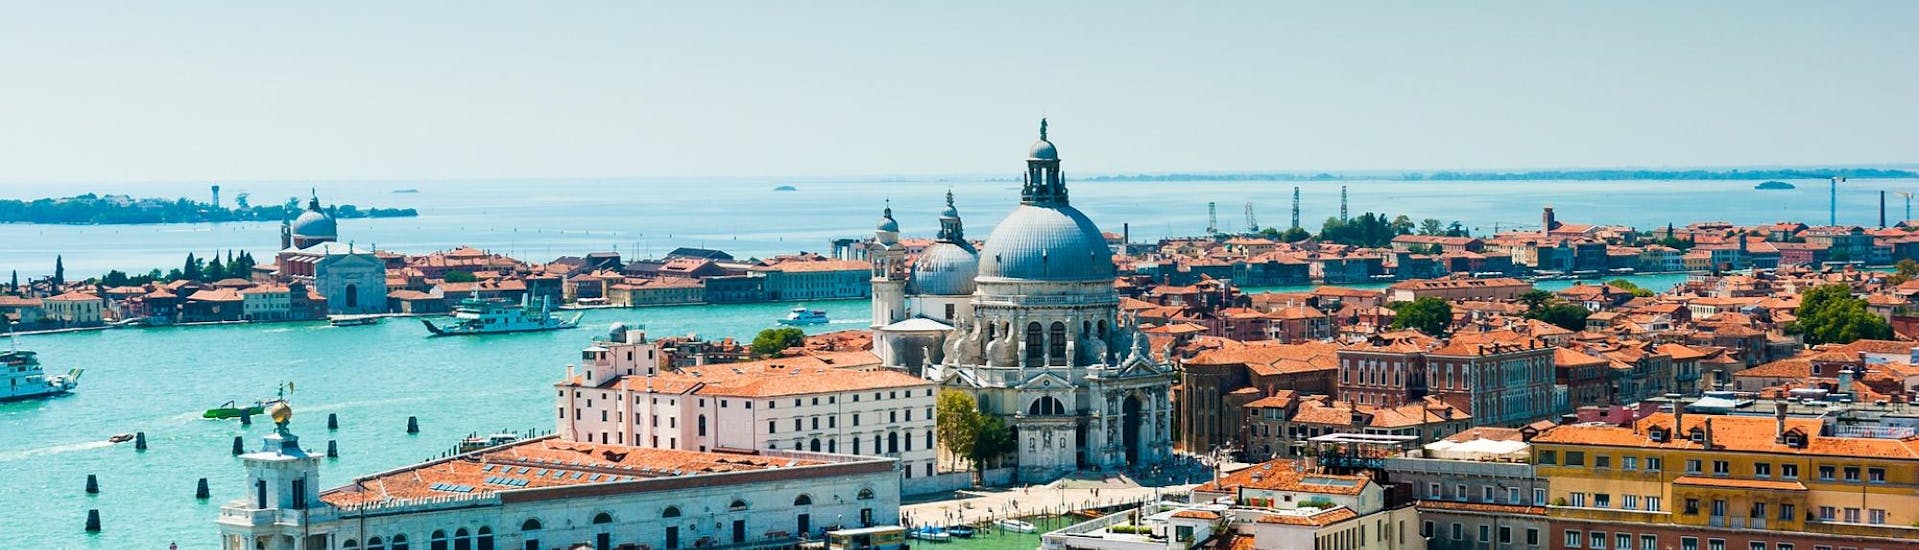 Vogelzicht op de stad Venetië, die men kan bezoeken met de boottransfer naar Venetië vanuit Punta Sabbioni met Il Doge di Venezia.